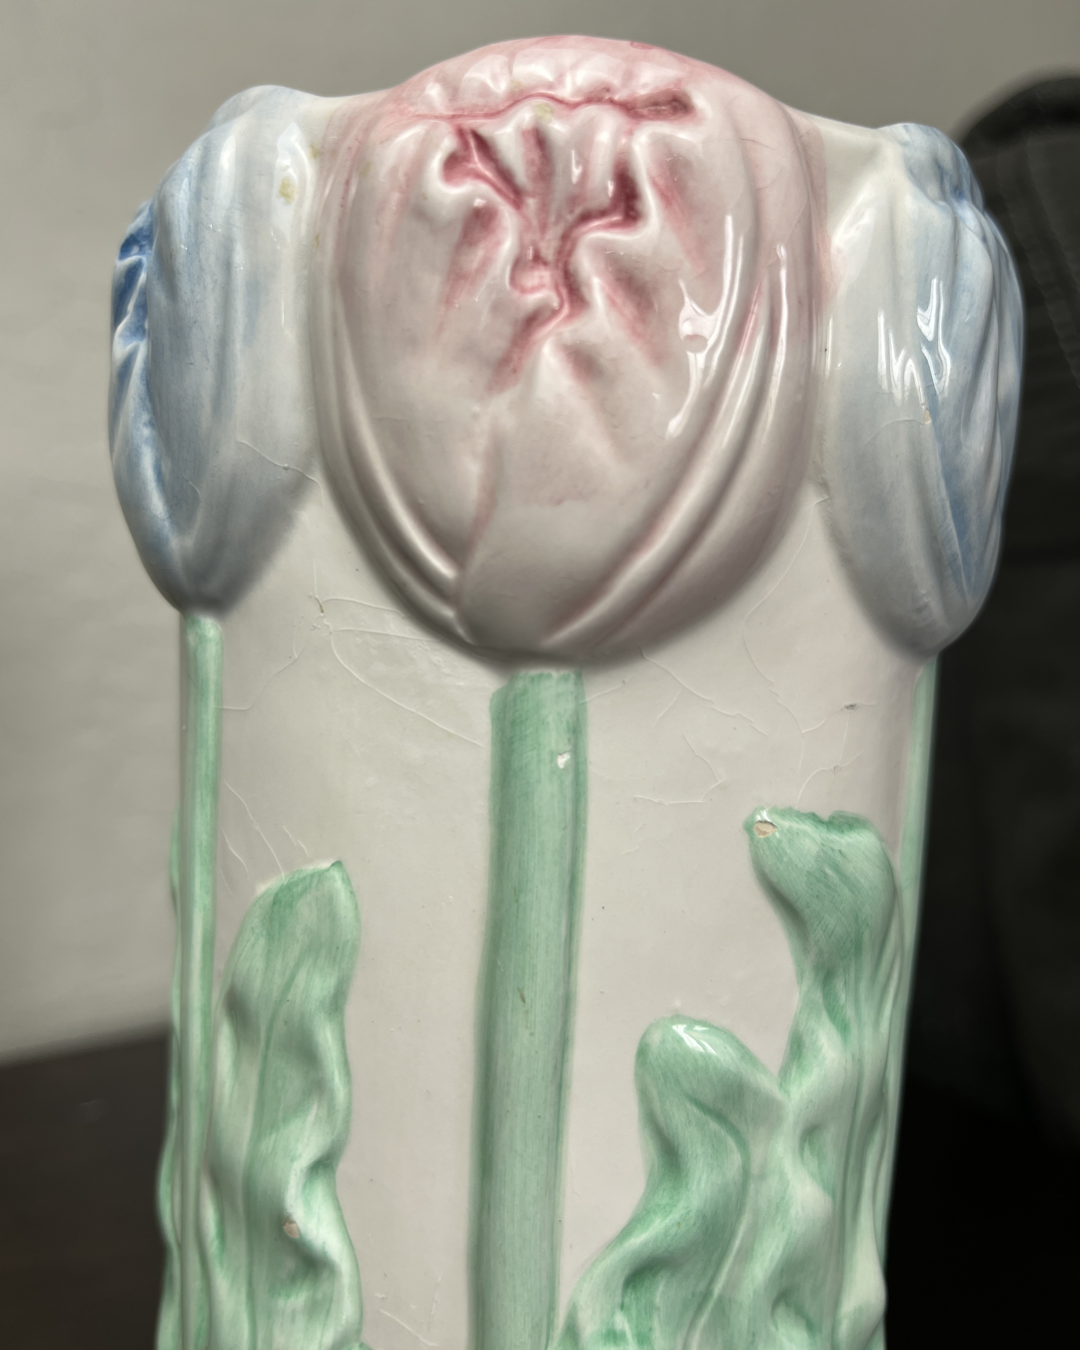 Bloomin' Delight Ceramic Vase